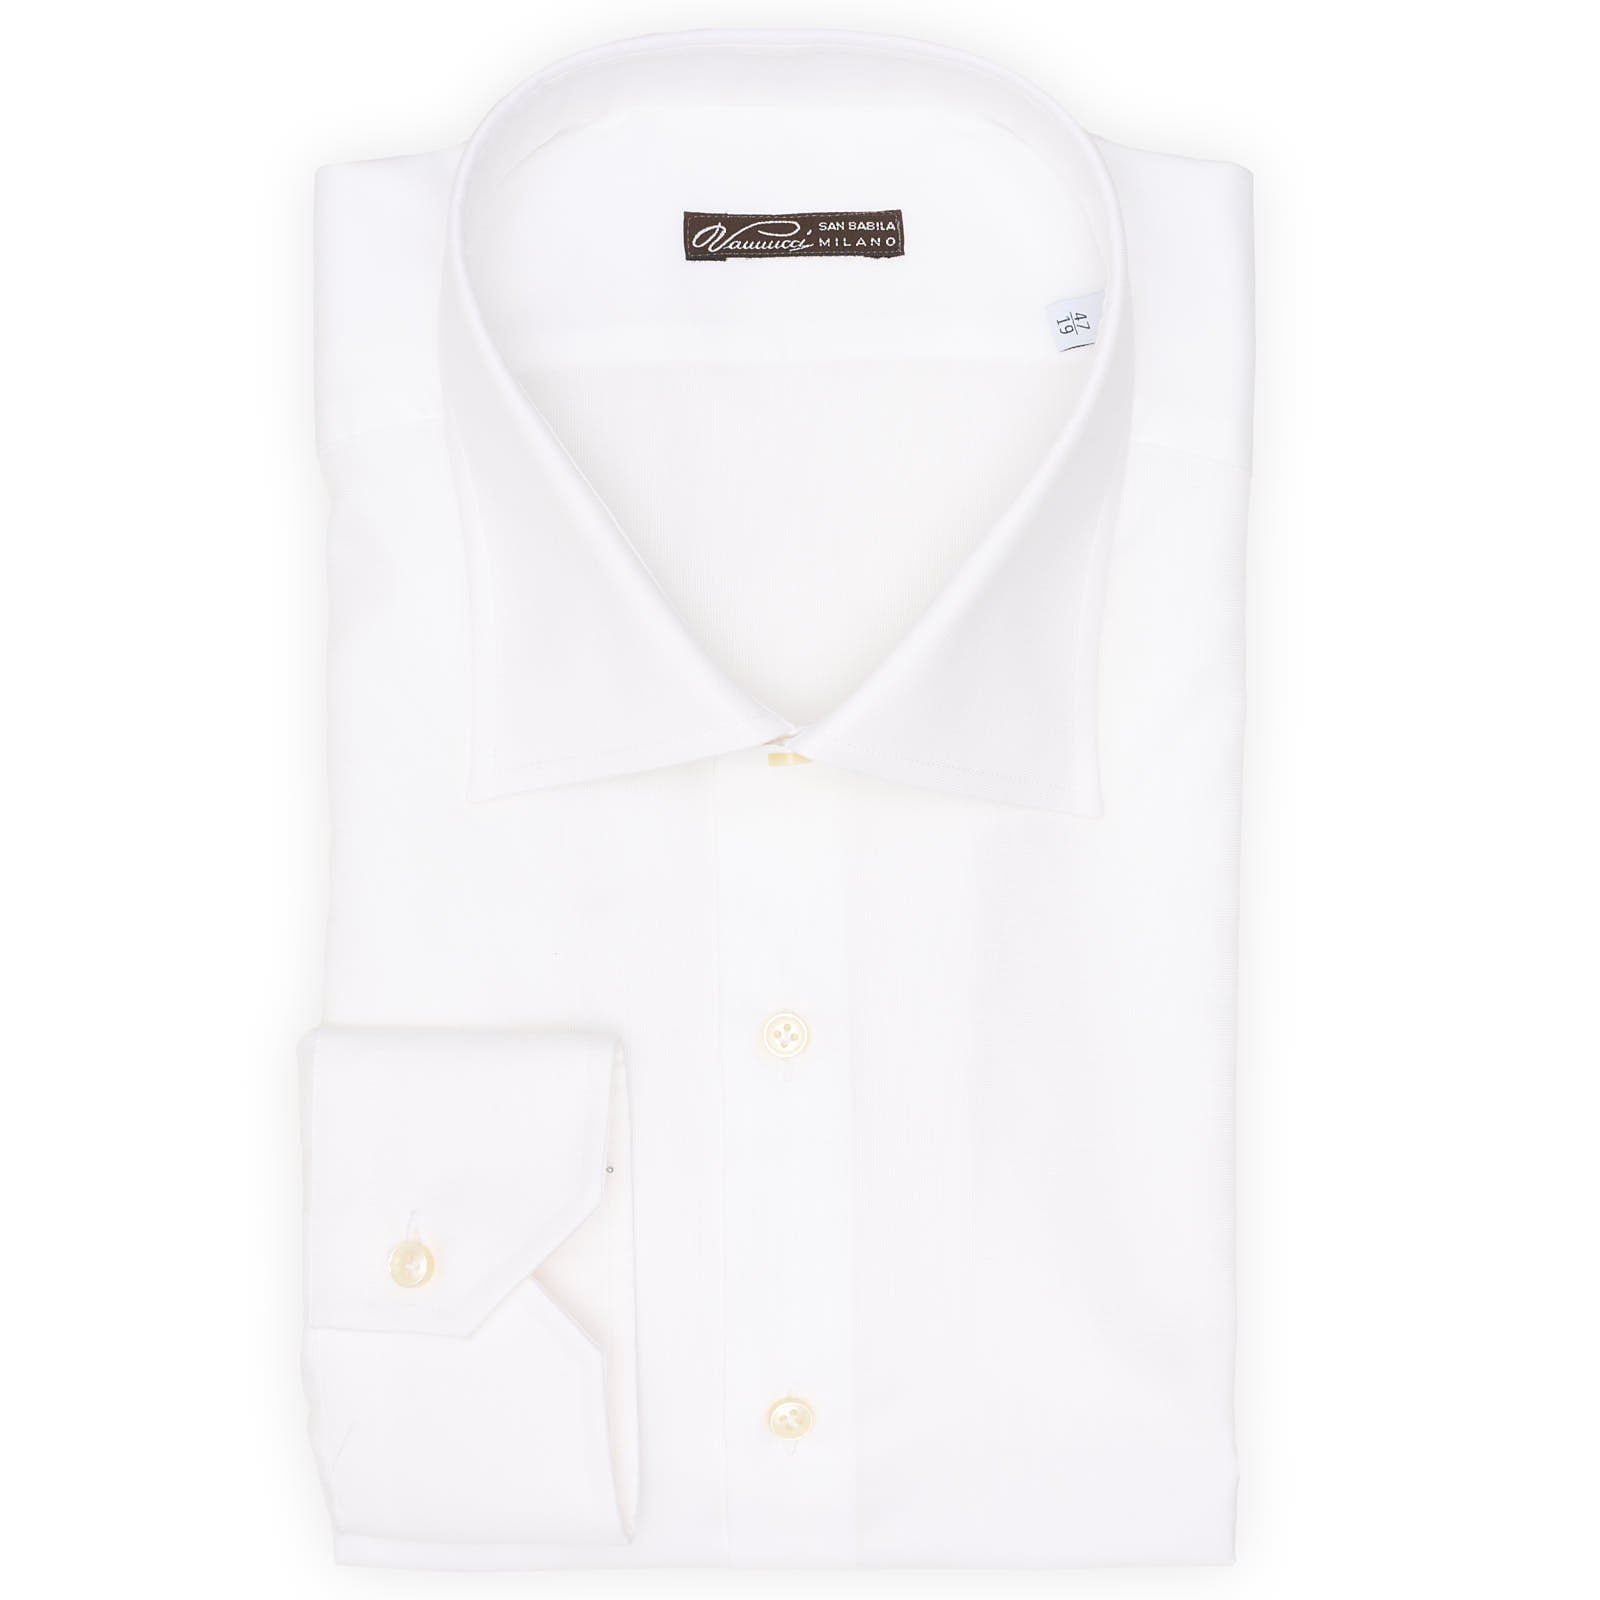 VANNUCCI Milano White Cotton Dress Shirt EU 47 NEW US 19